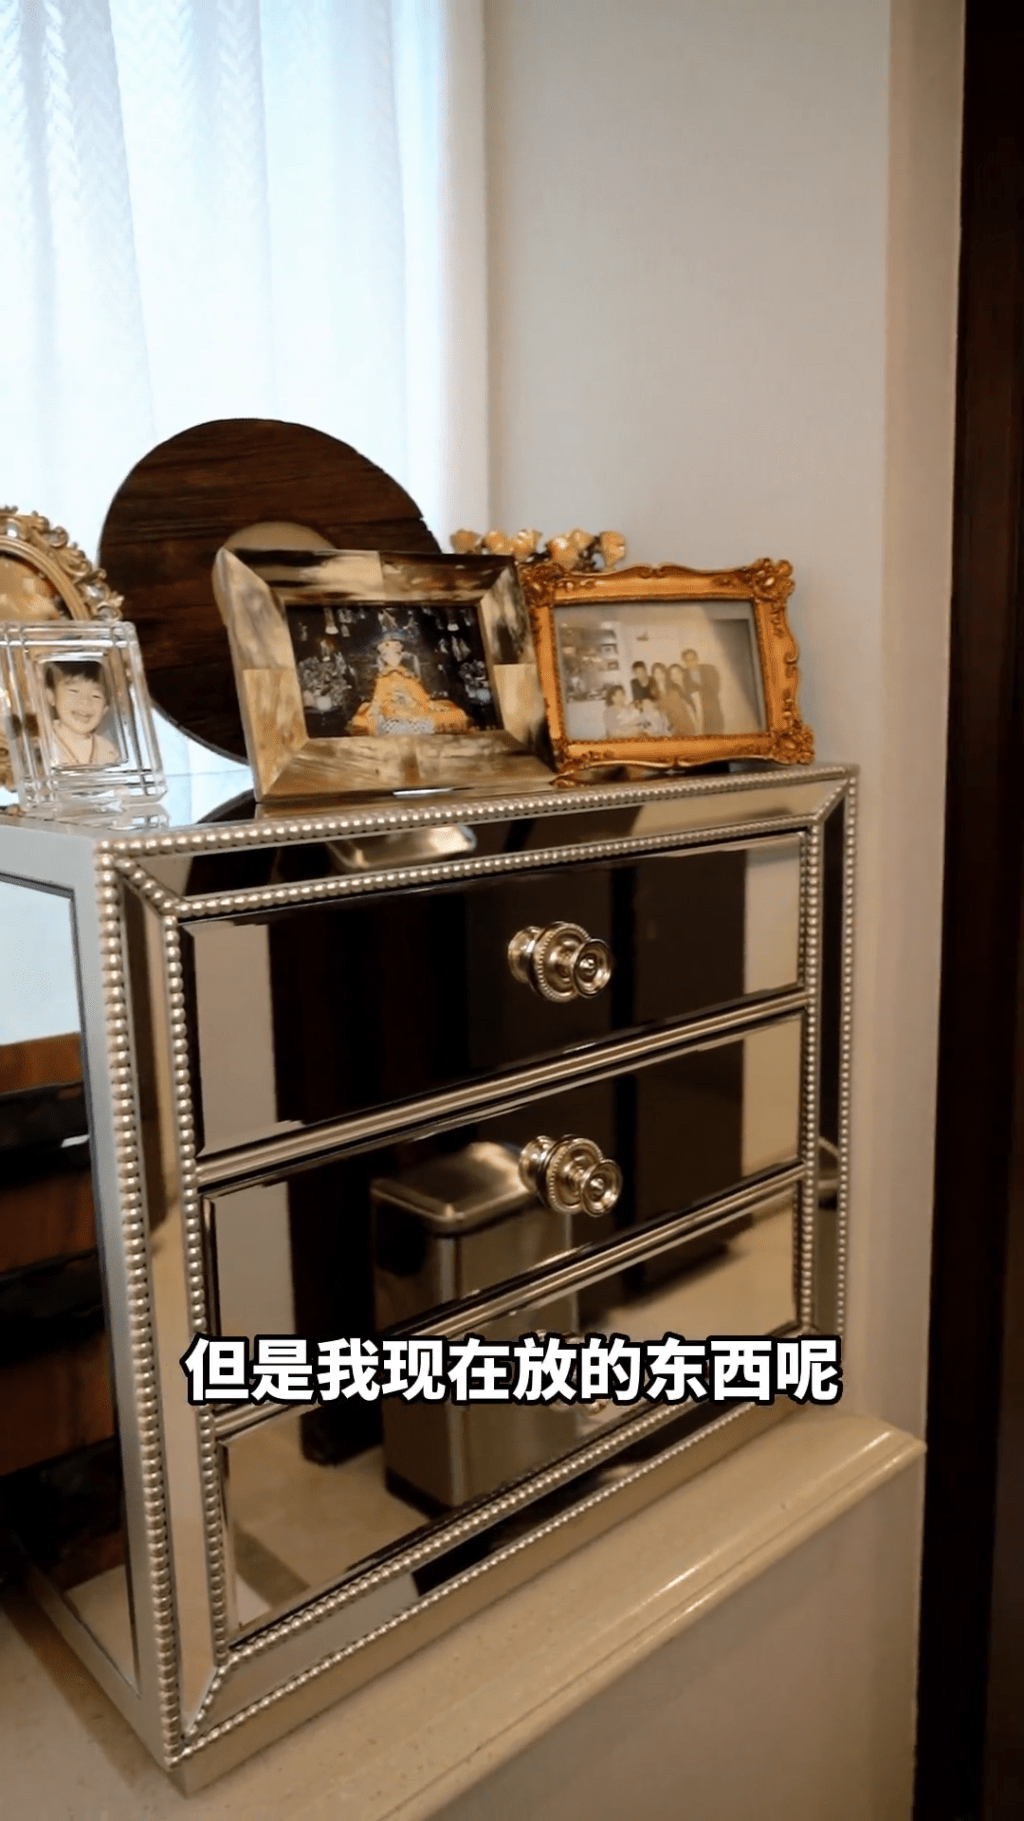 戴蕴慧家中有个金属抽屉柜，上方摆满家庭照。